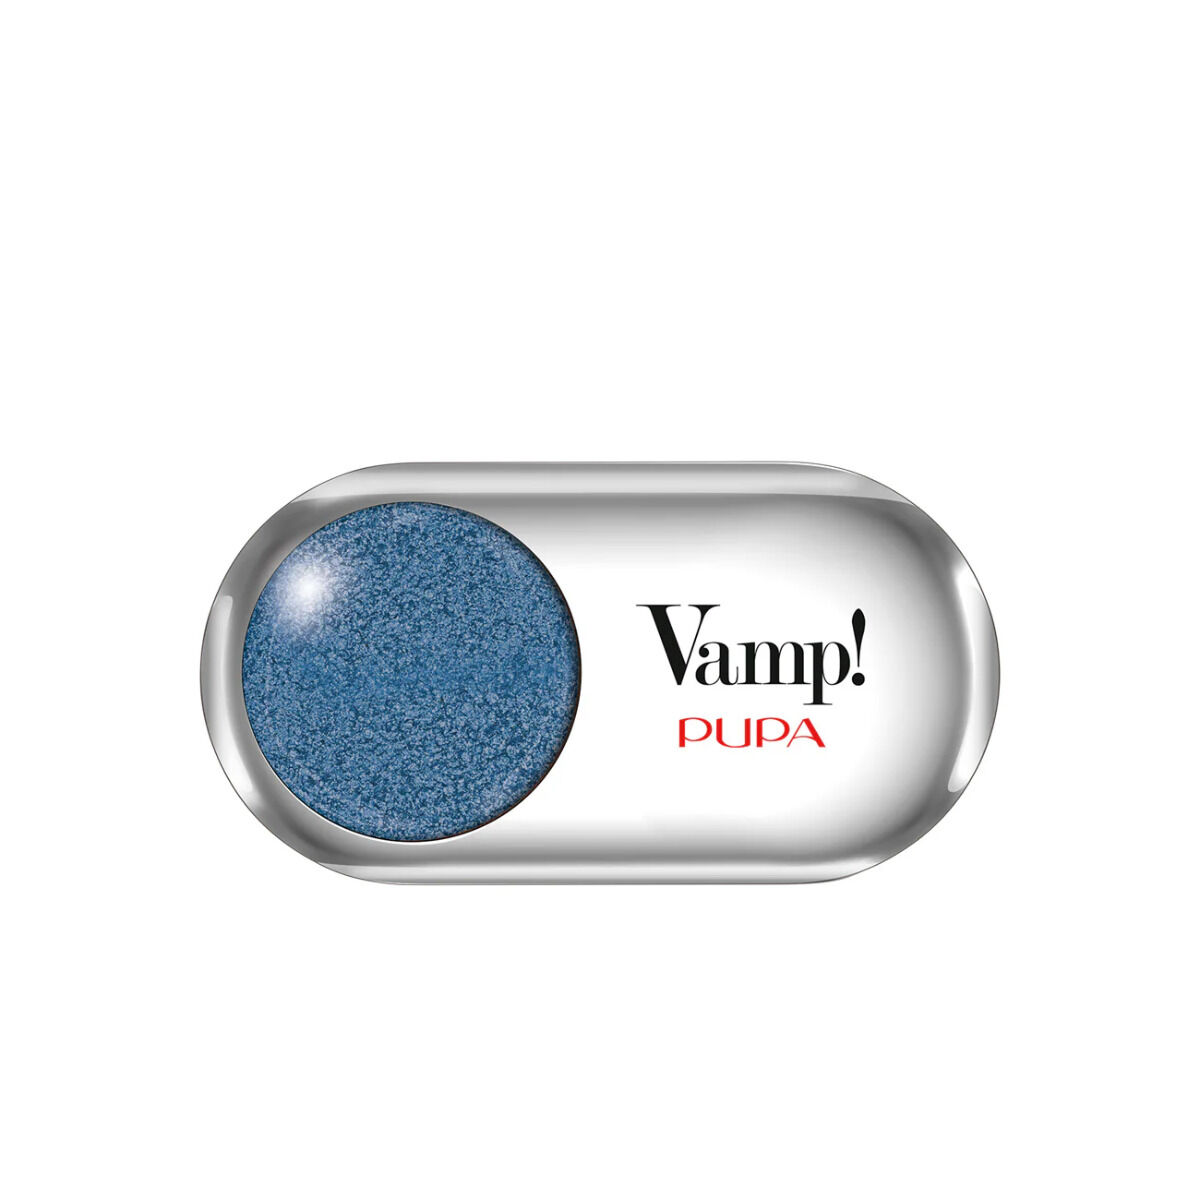 Kapperskorting Pupa Milano Vamp! Metallic Eyeshadow 307-Denim Blue 1.5gr